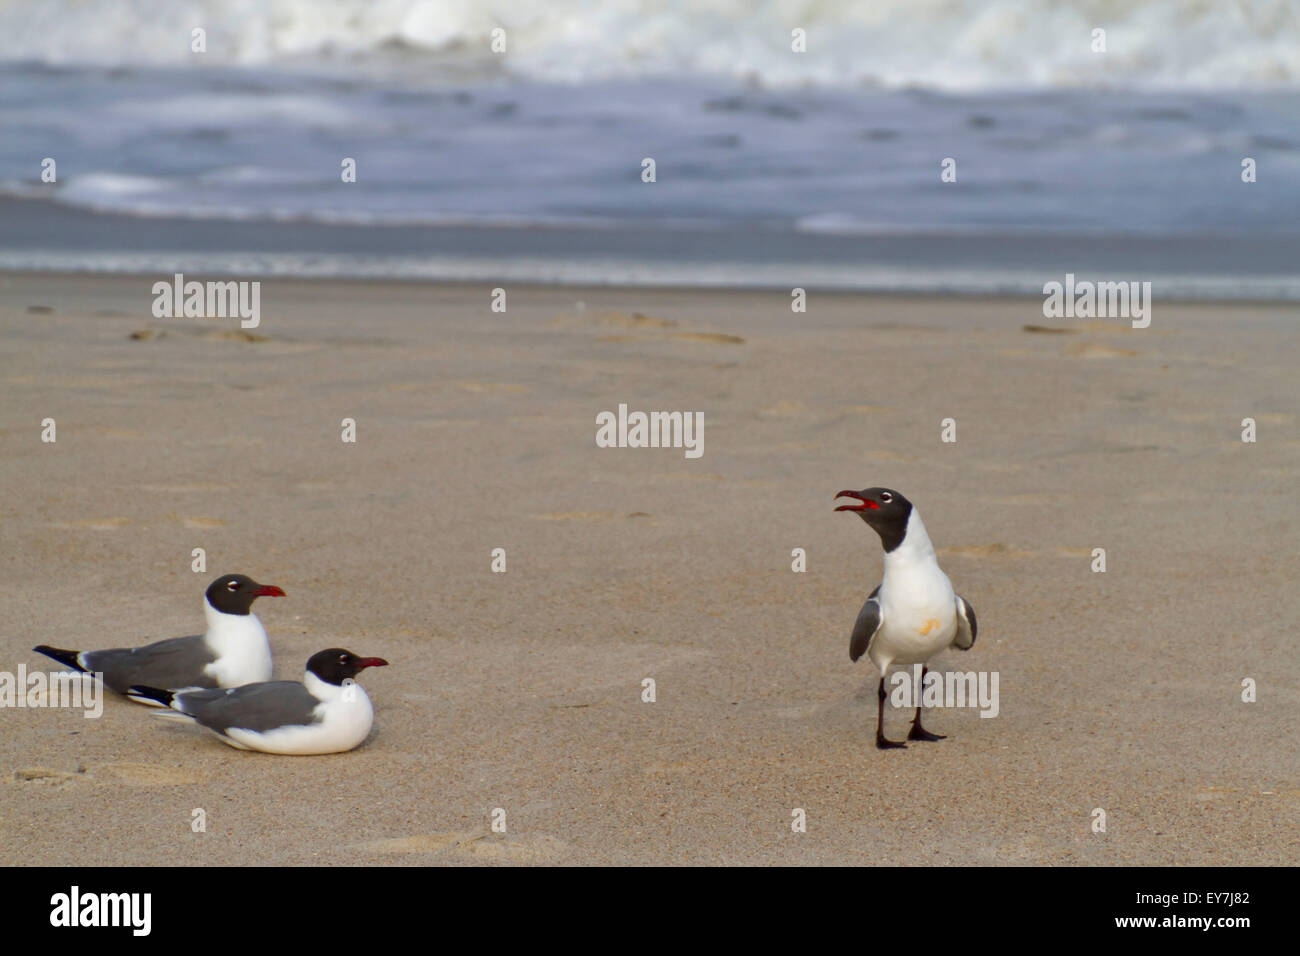 Due gabbiani si trovano vicino insieme sulla spiaggia in riva al mare a guardare come un terzo seagull rumorosamente vocalizes a loro Foto Stock